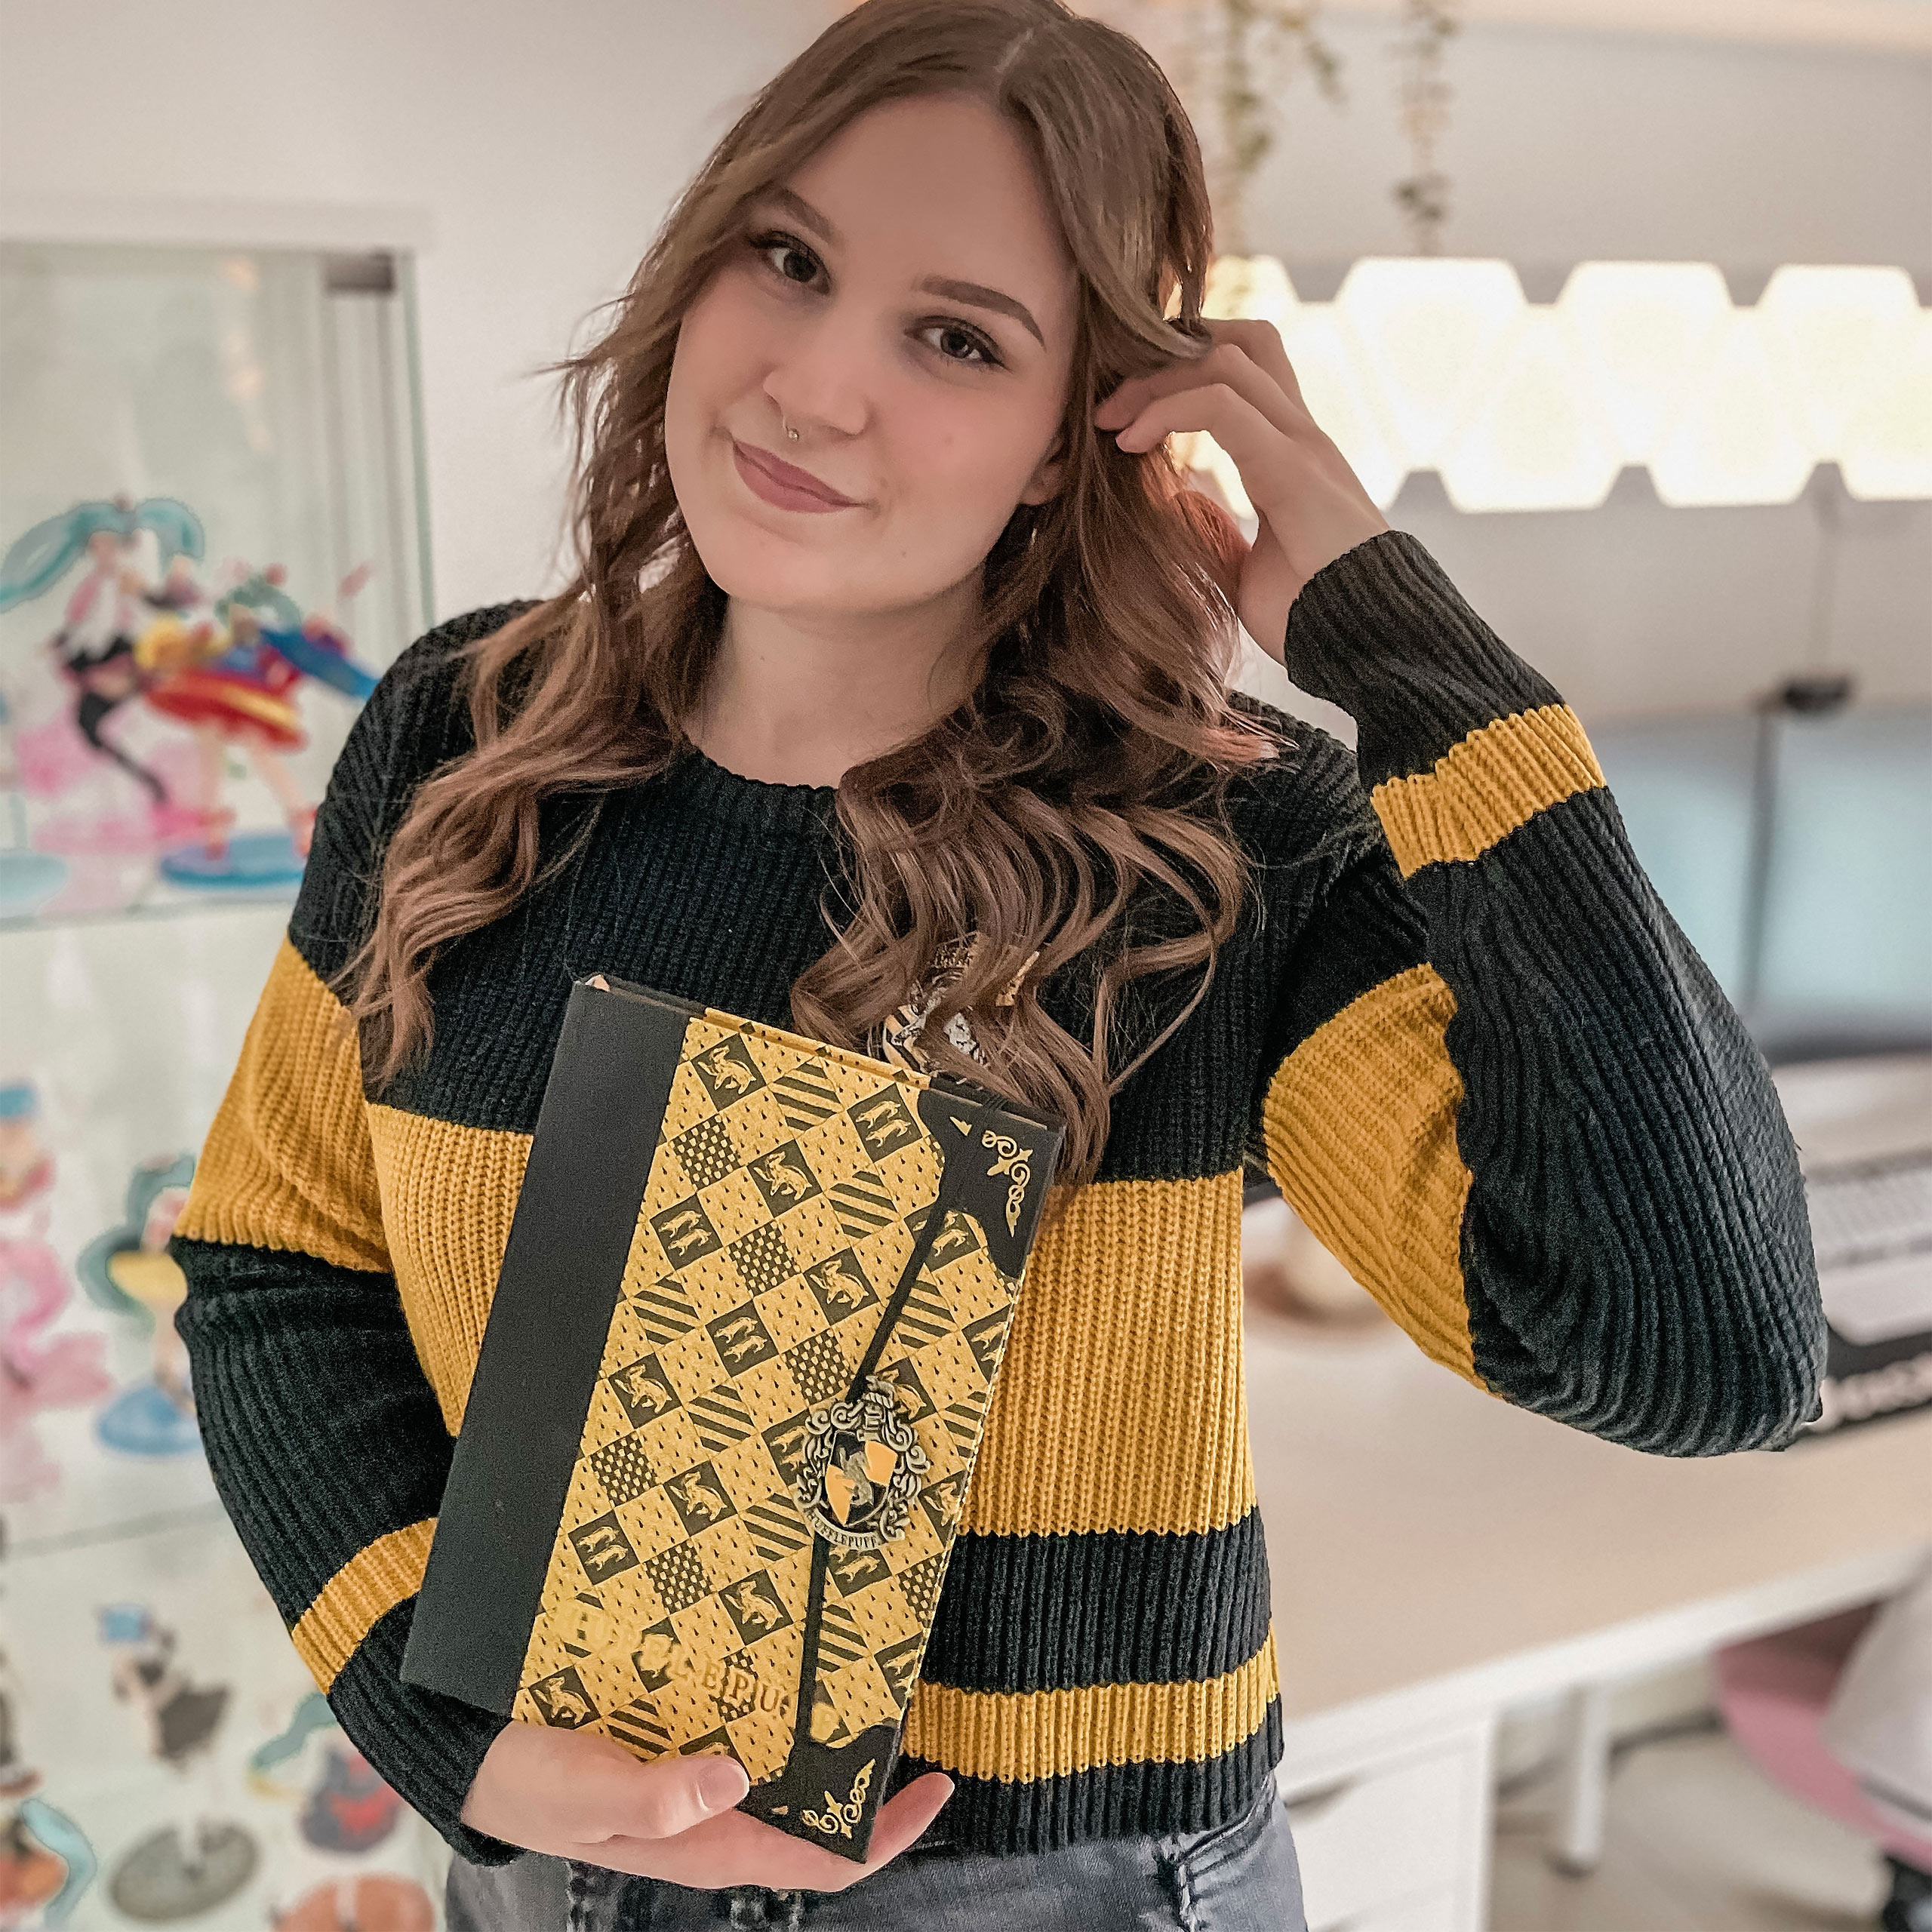 Harry Potter - Hufflepuff Crop Sweater Women